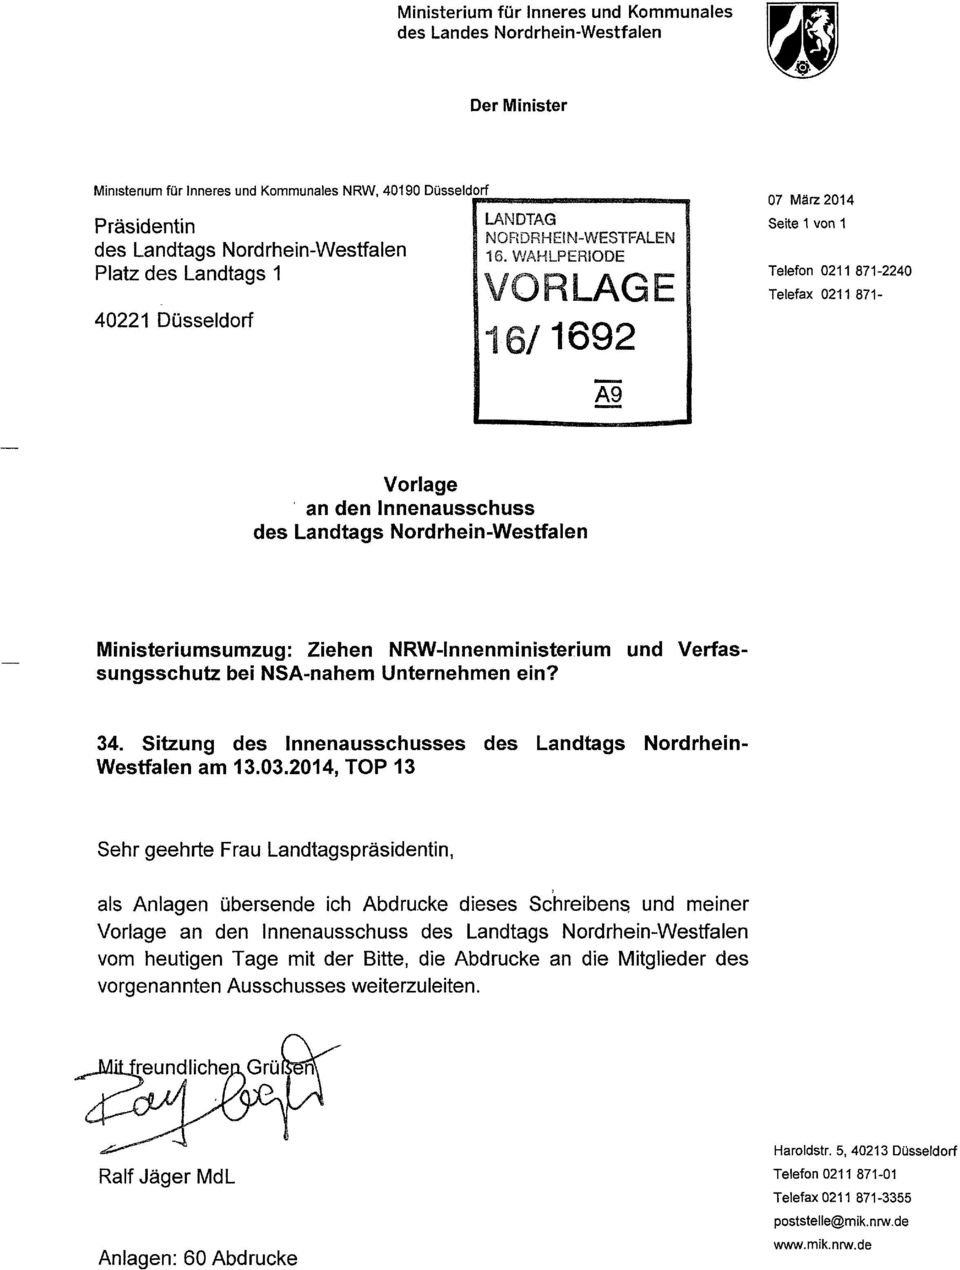 NRW-Innenministerium und Verfassungsschutz bei NSA-nahem Unternehmen ein? 34. Sitzung des Innenausschusses des Landtags Nordrhein Westfalen am 13.03.